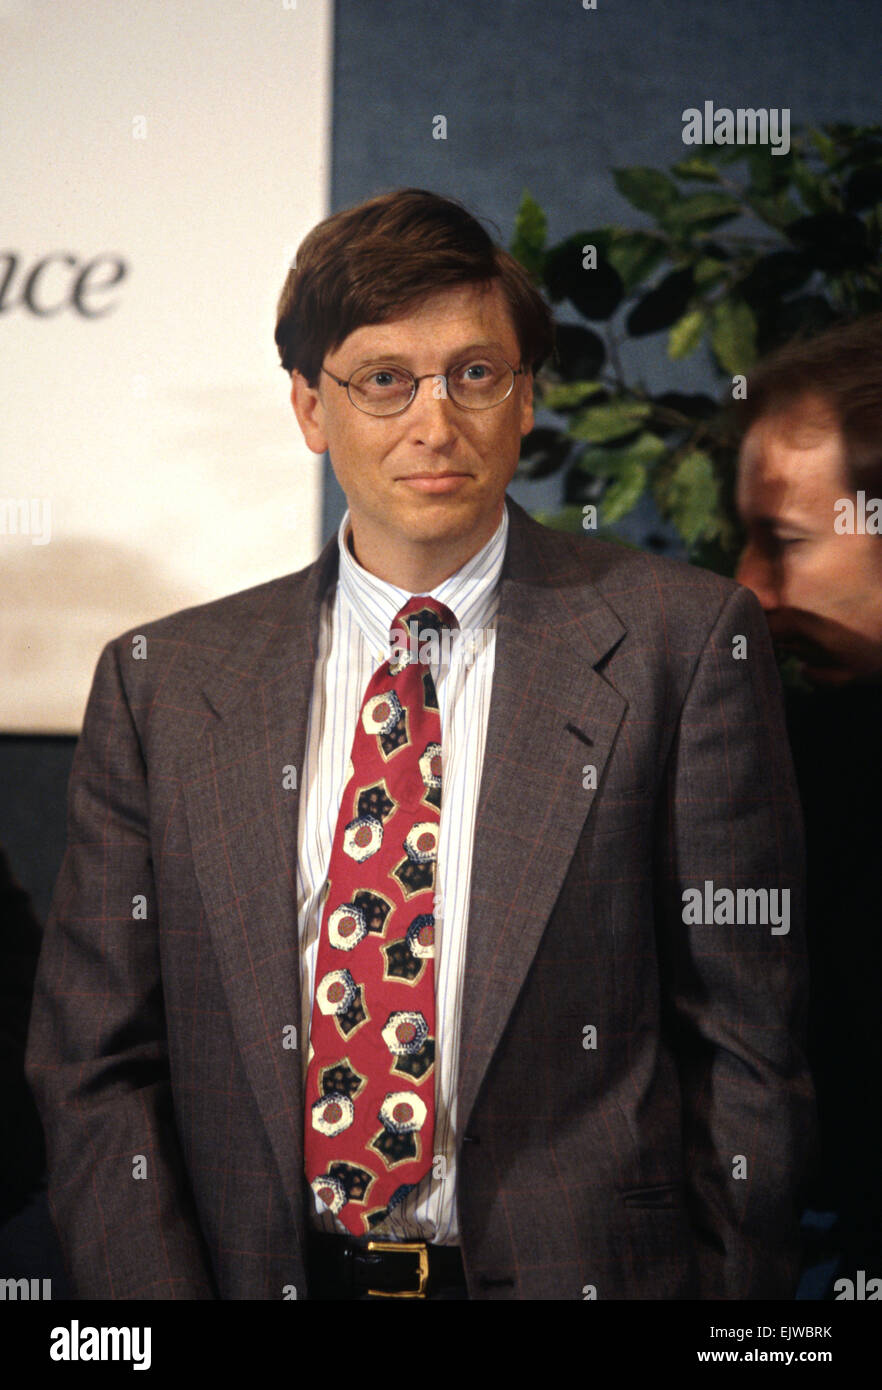 Pdg de Microsoft Bill Gates lors d'un événement technologique au National Press Club le 4 juin 1997 à Washington, DC. Banque D'Images